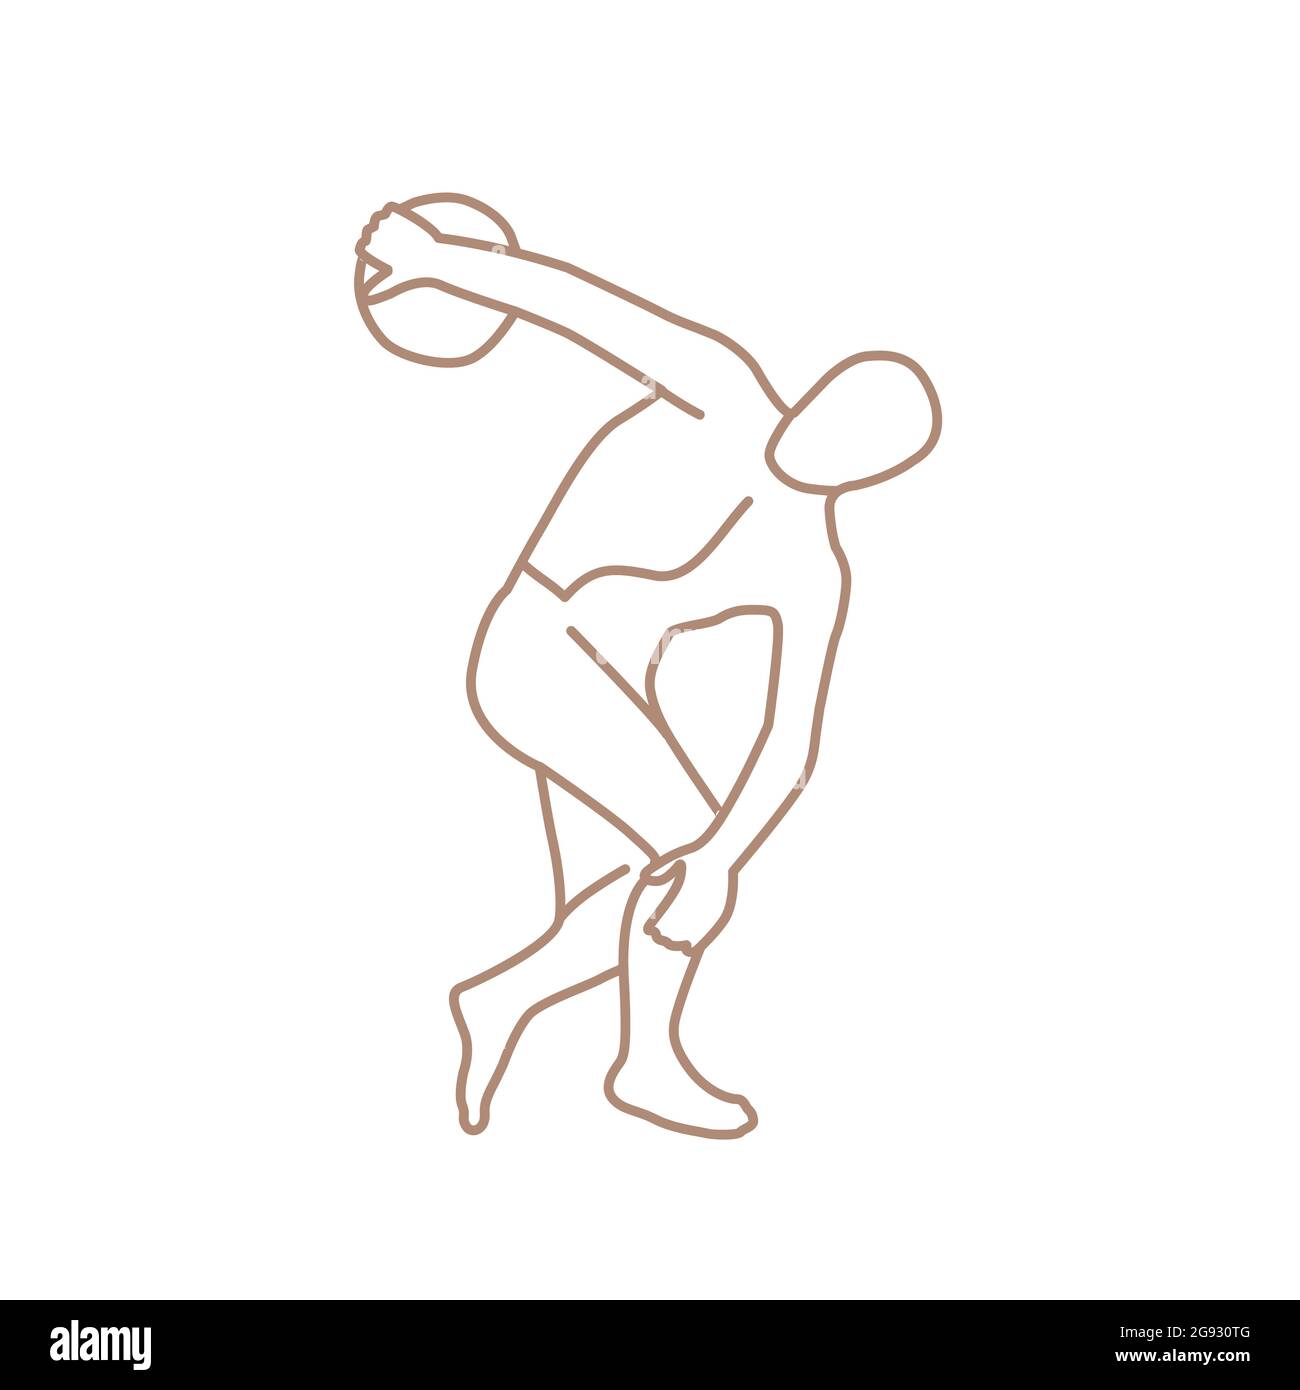 Discobolus de Myron Escultura de bronce Griega Doodle de época clásica Ilustración del Vector